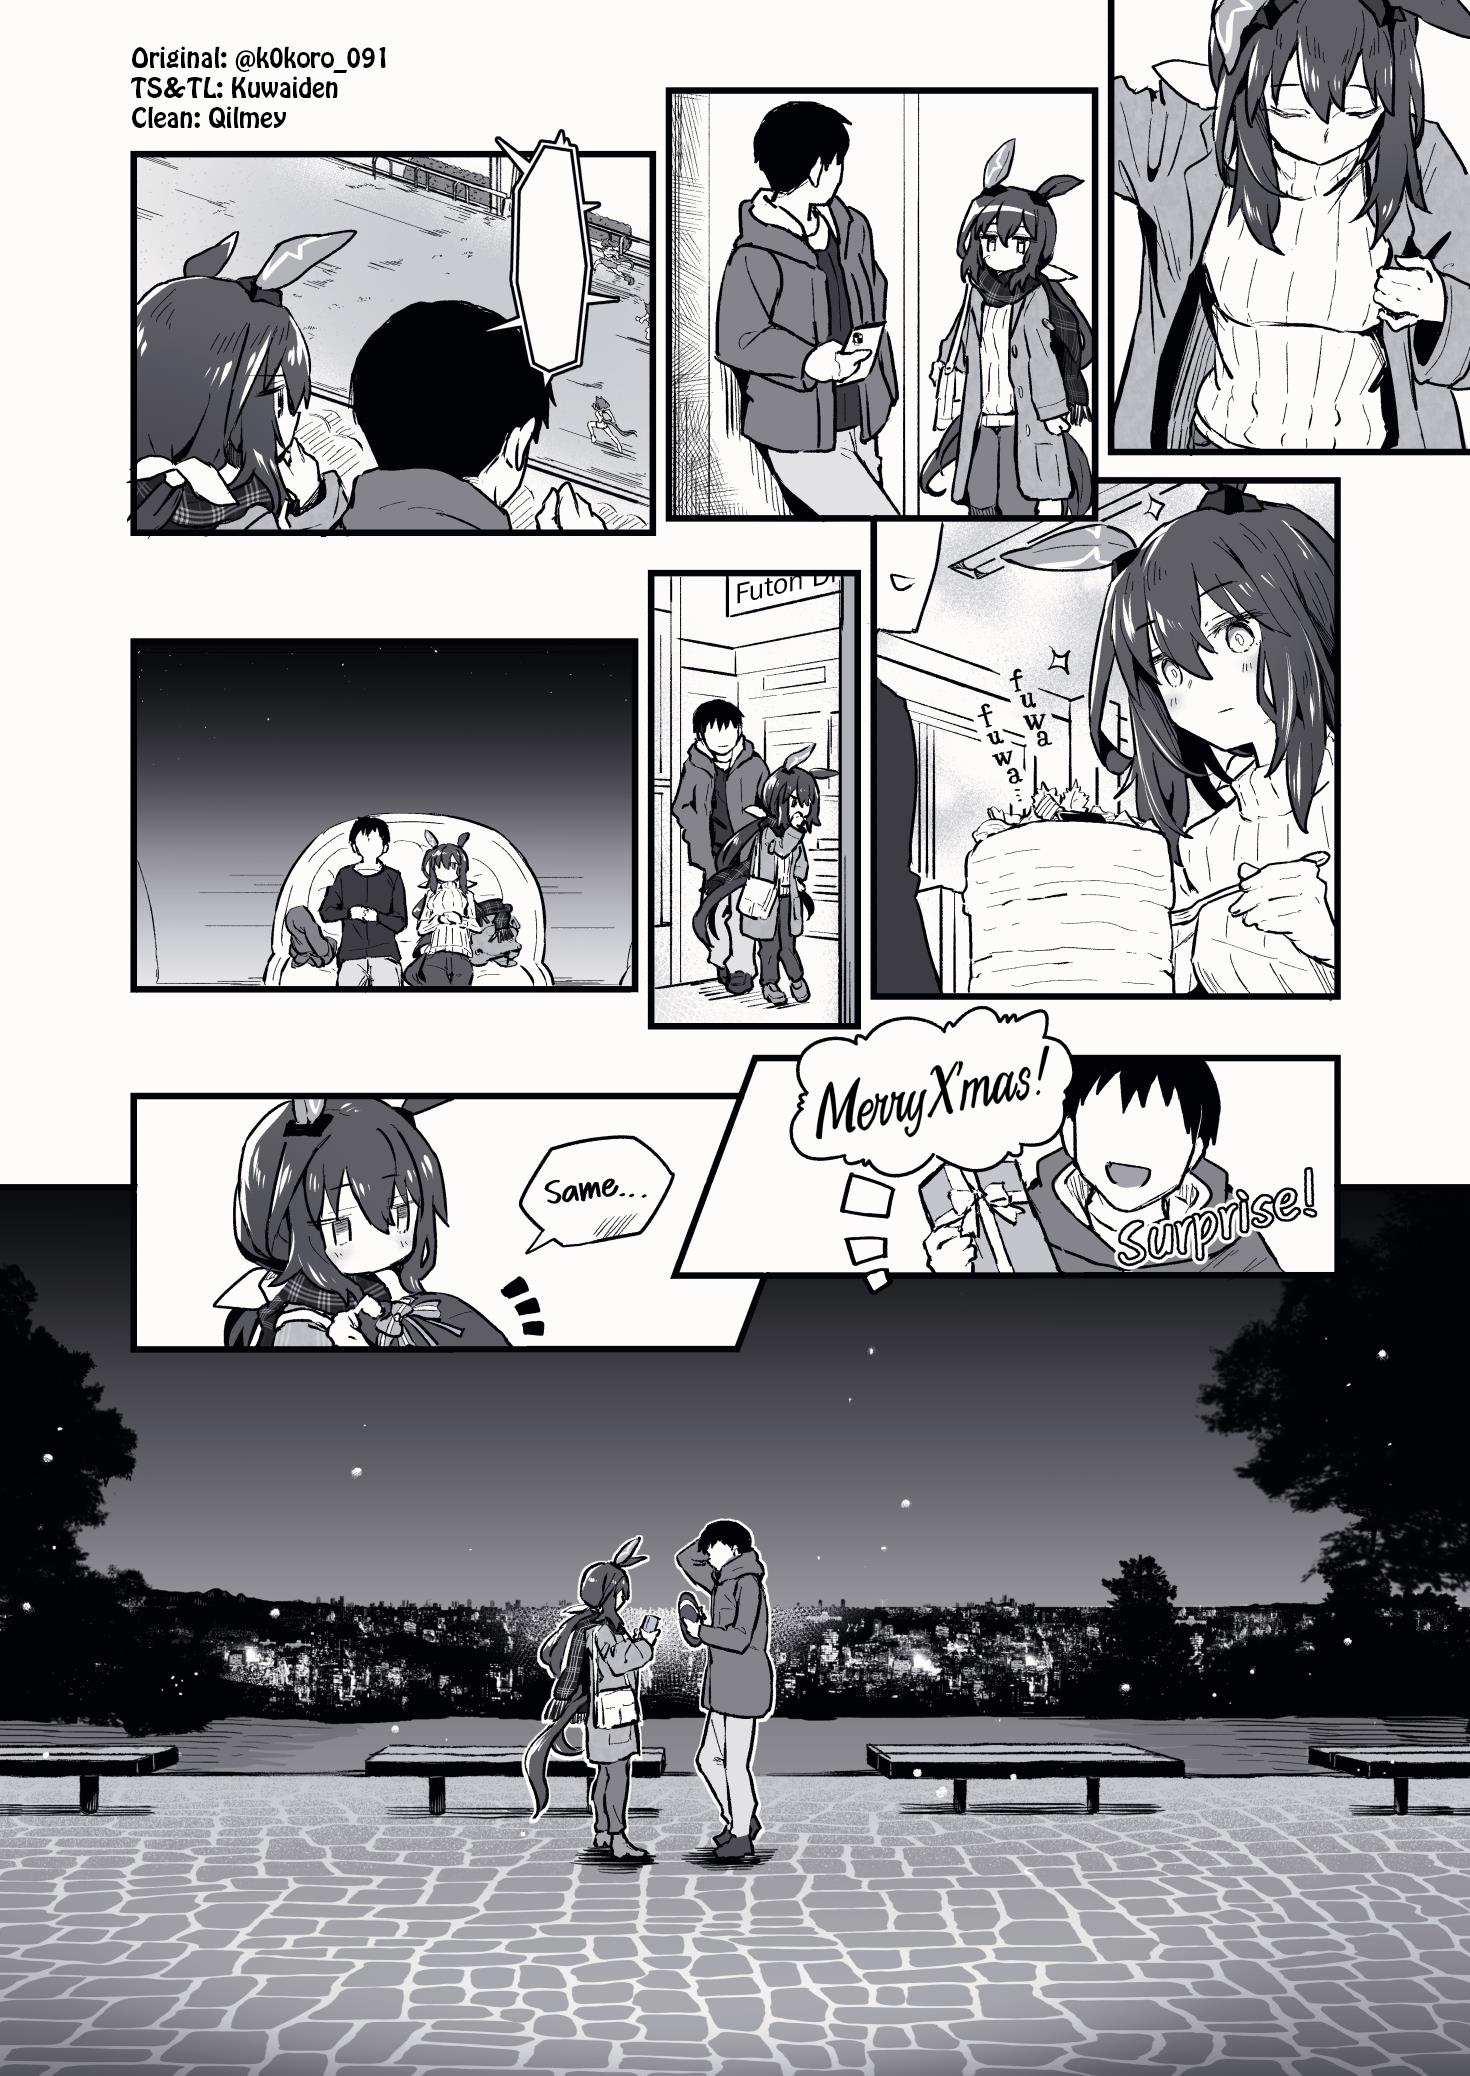 Kokoro-Sensei's Umamusume Shorts (Doujinshi) - Page 4